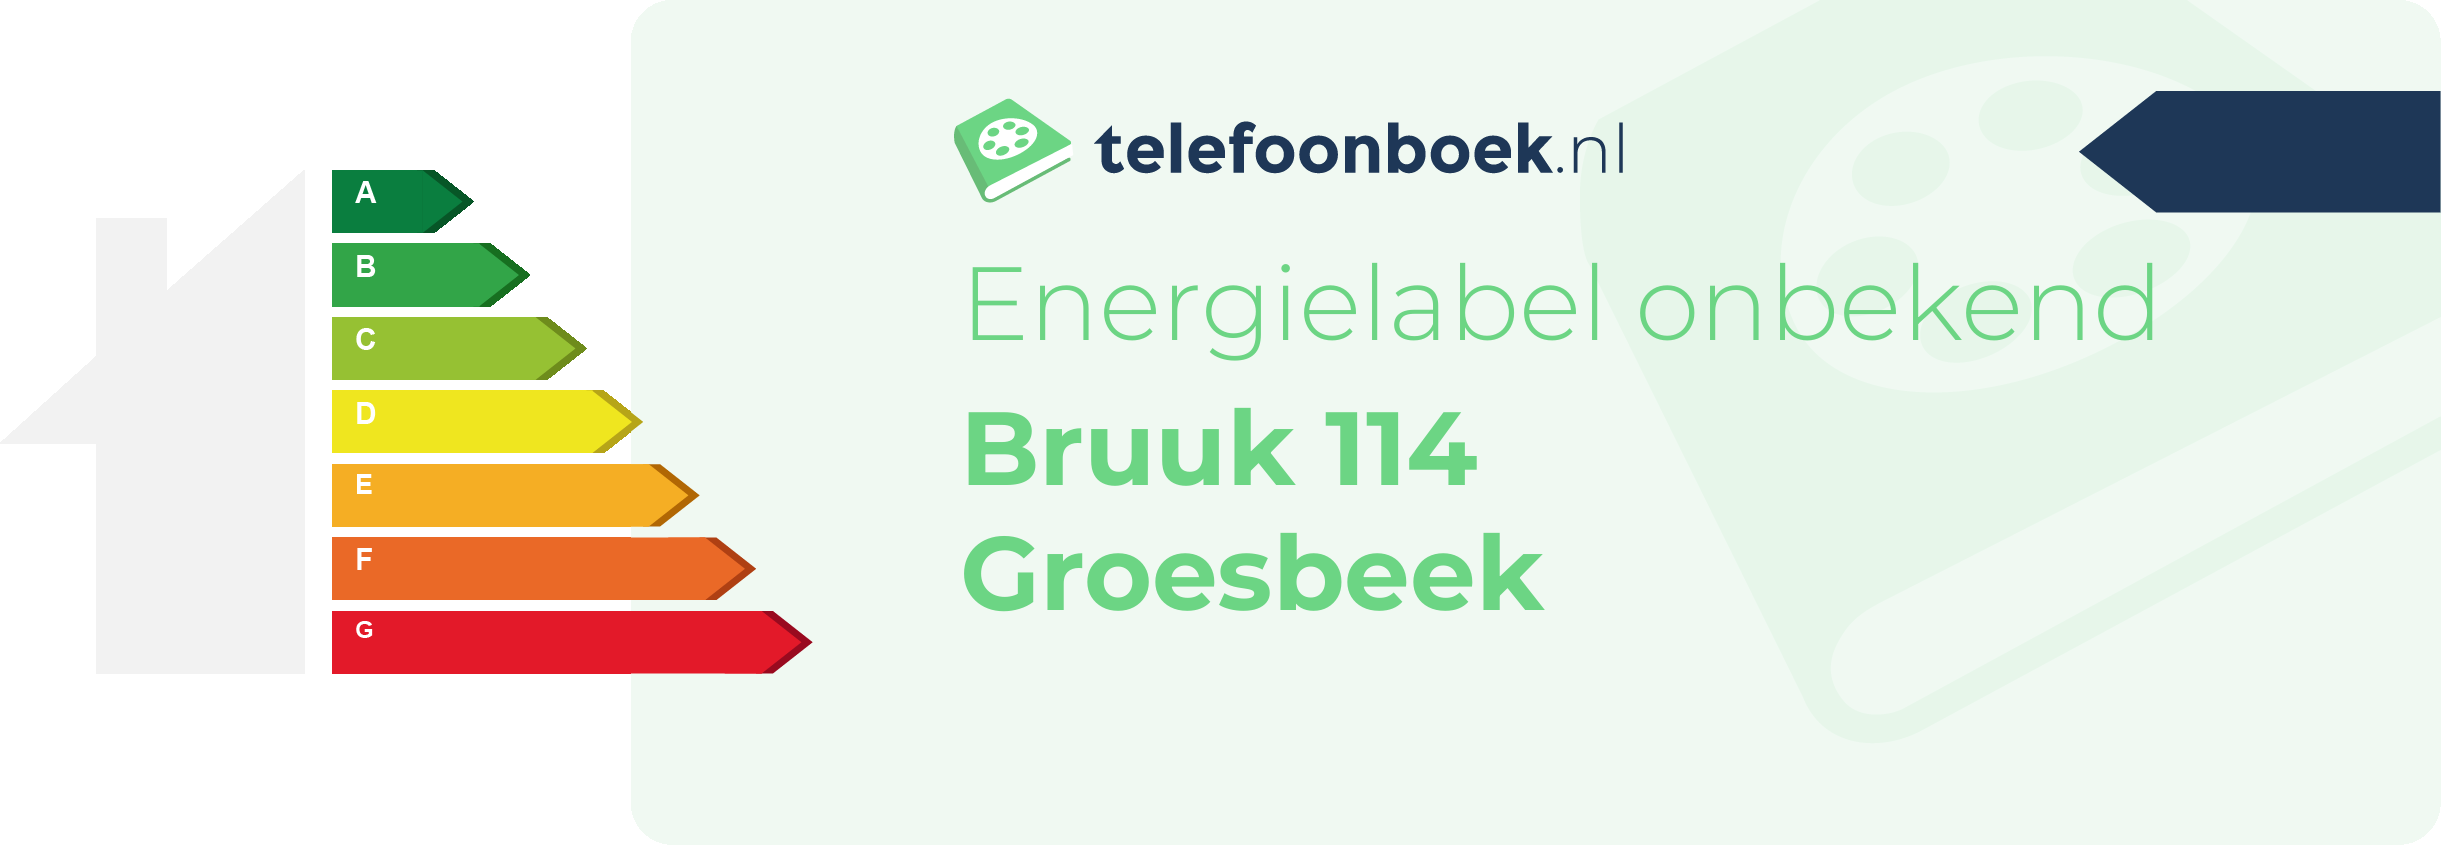 Energielabel Bruuk 114 Groesbeek